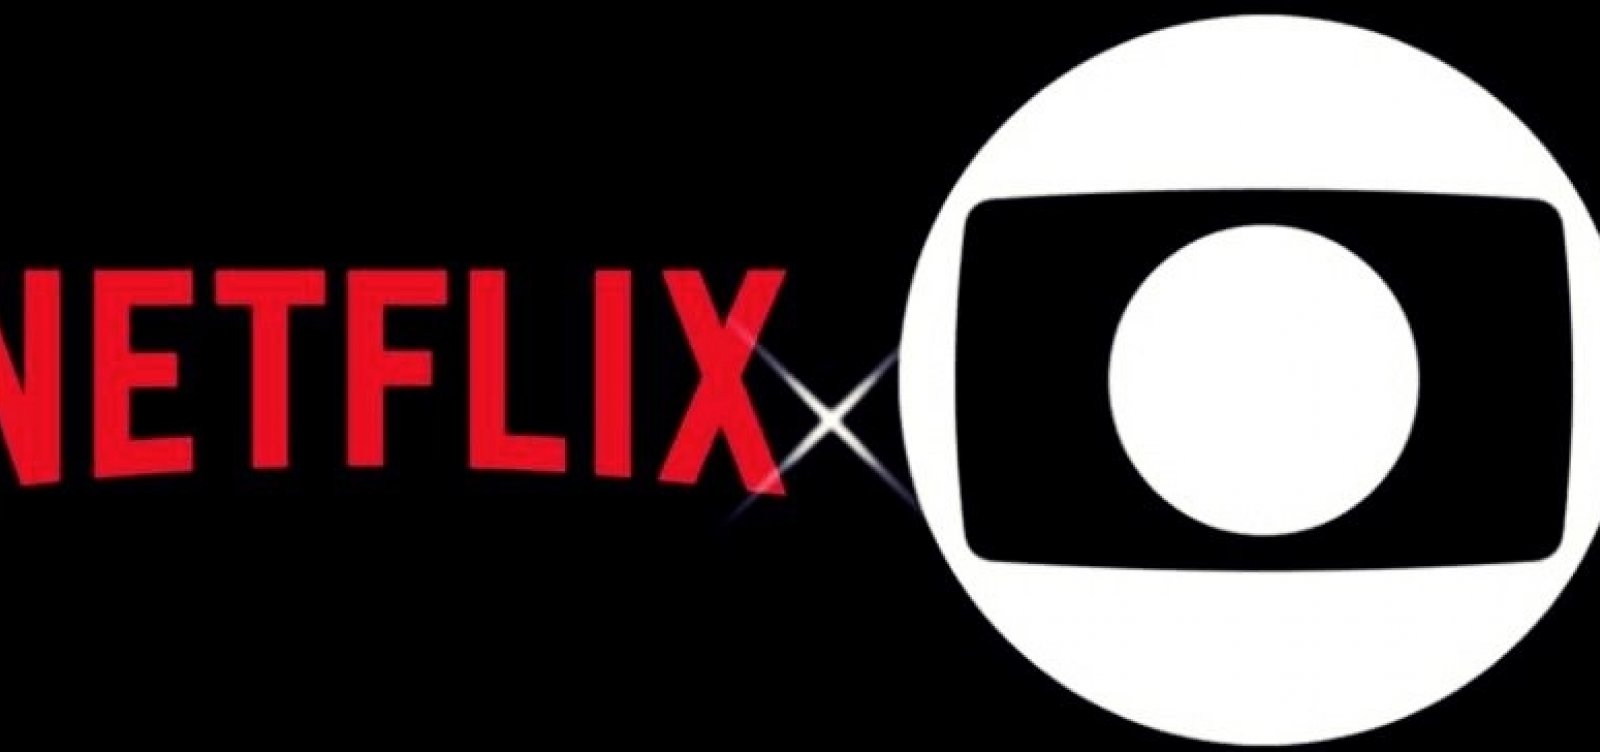 Globo declara guerra e proíbe atores de participarem em produções da Netflix